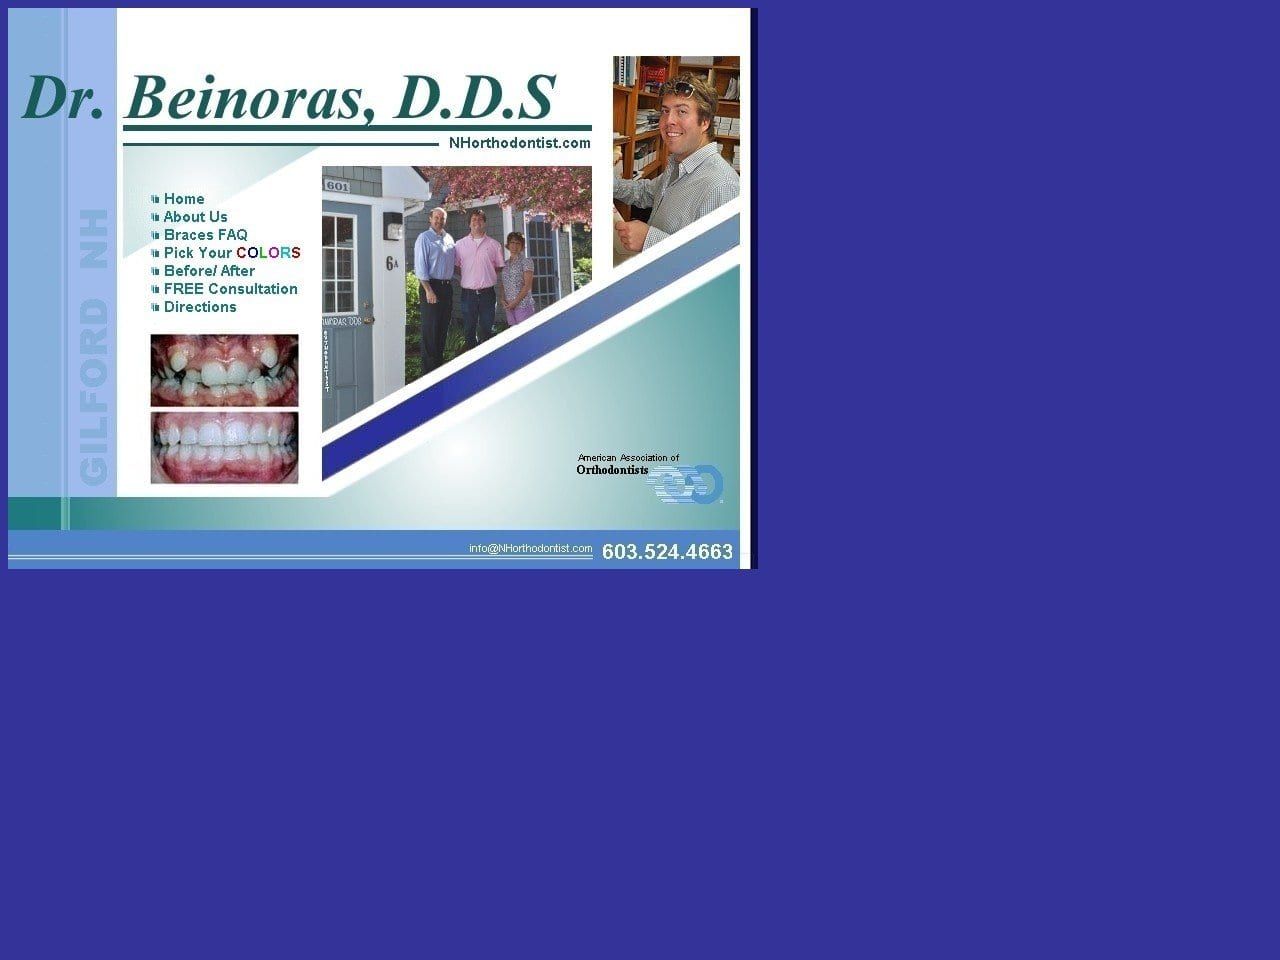 Dr. John E. Beinoras D.D.S. Website Screenshot from nhorthodontist.com